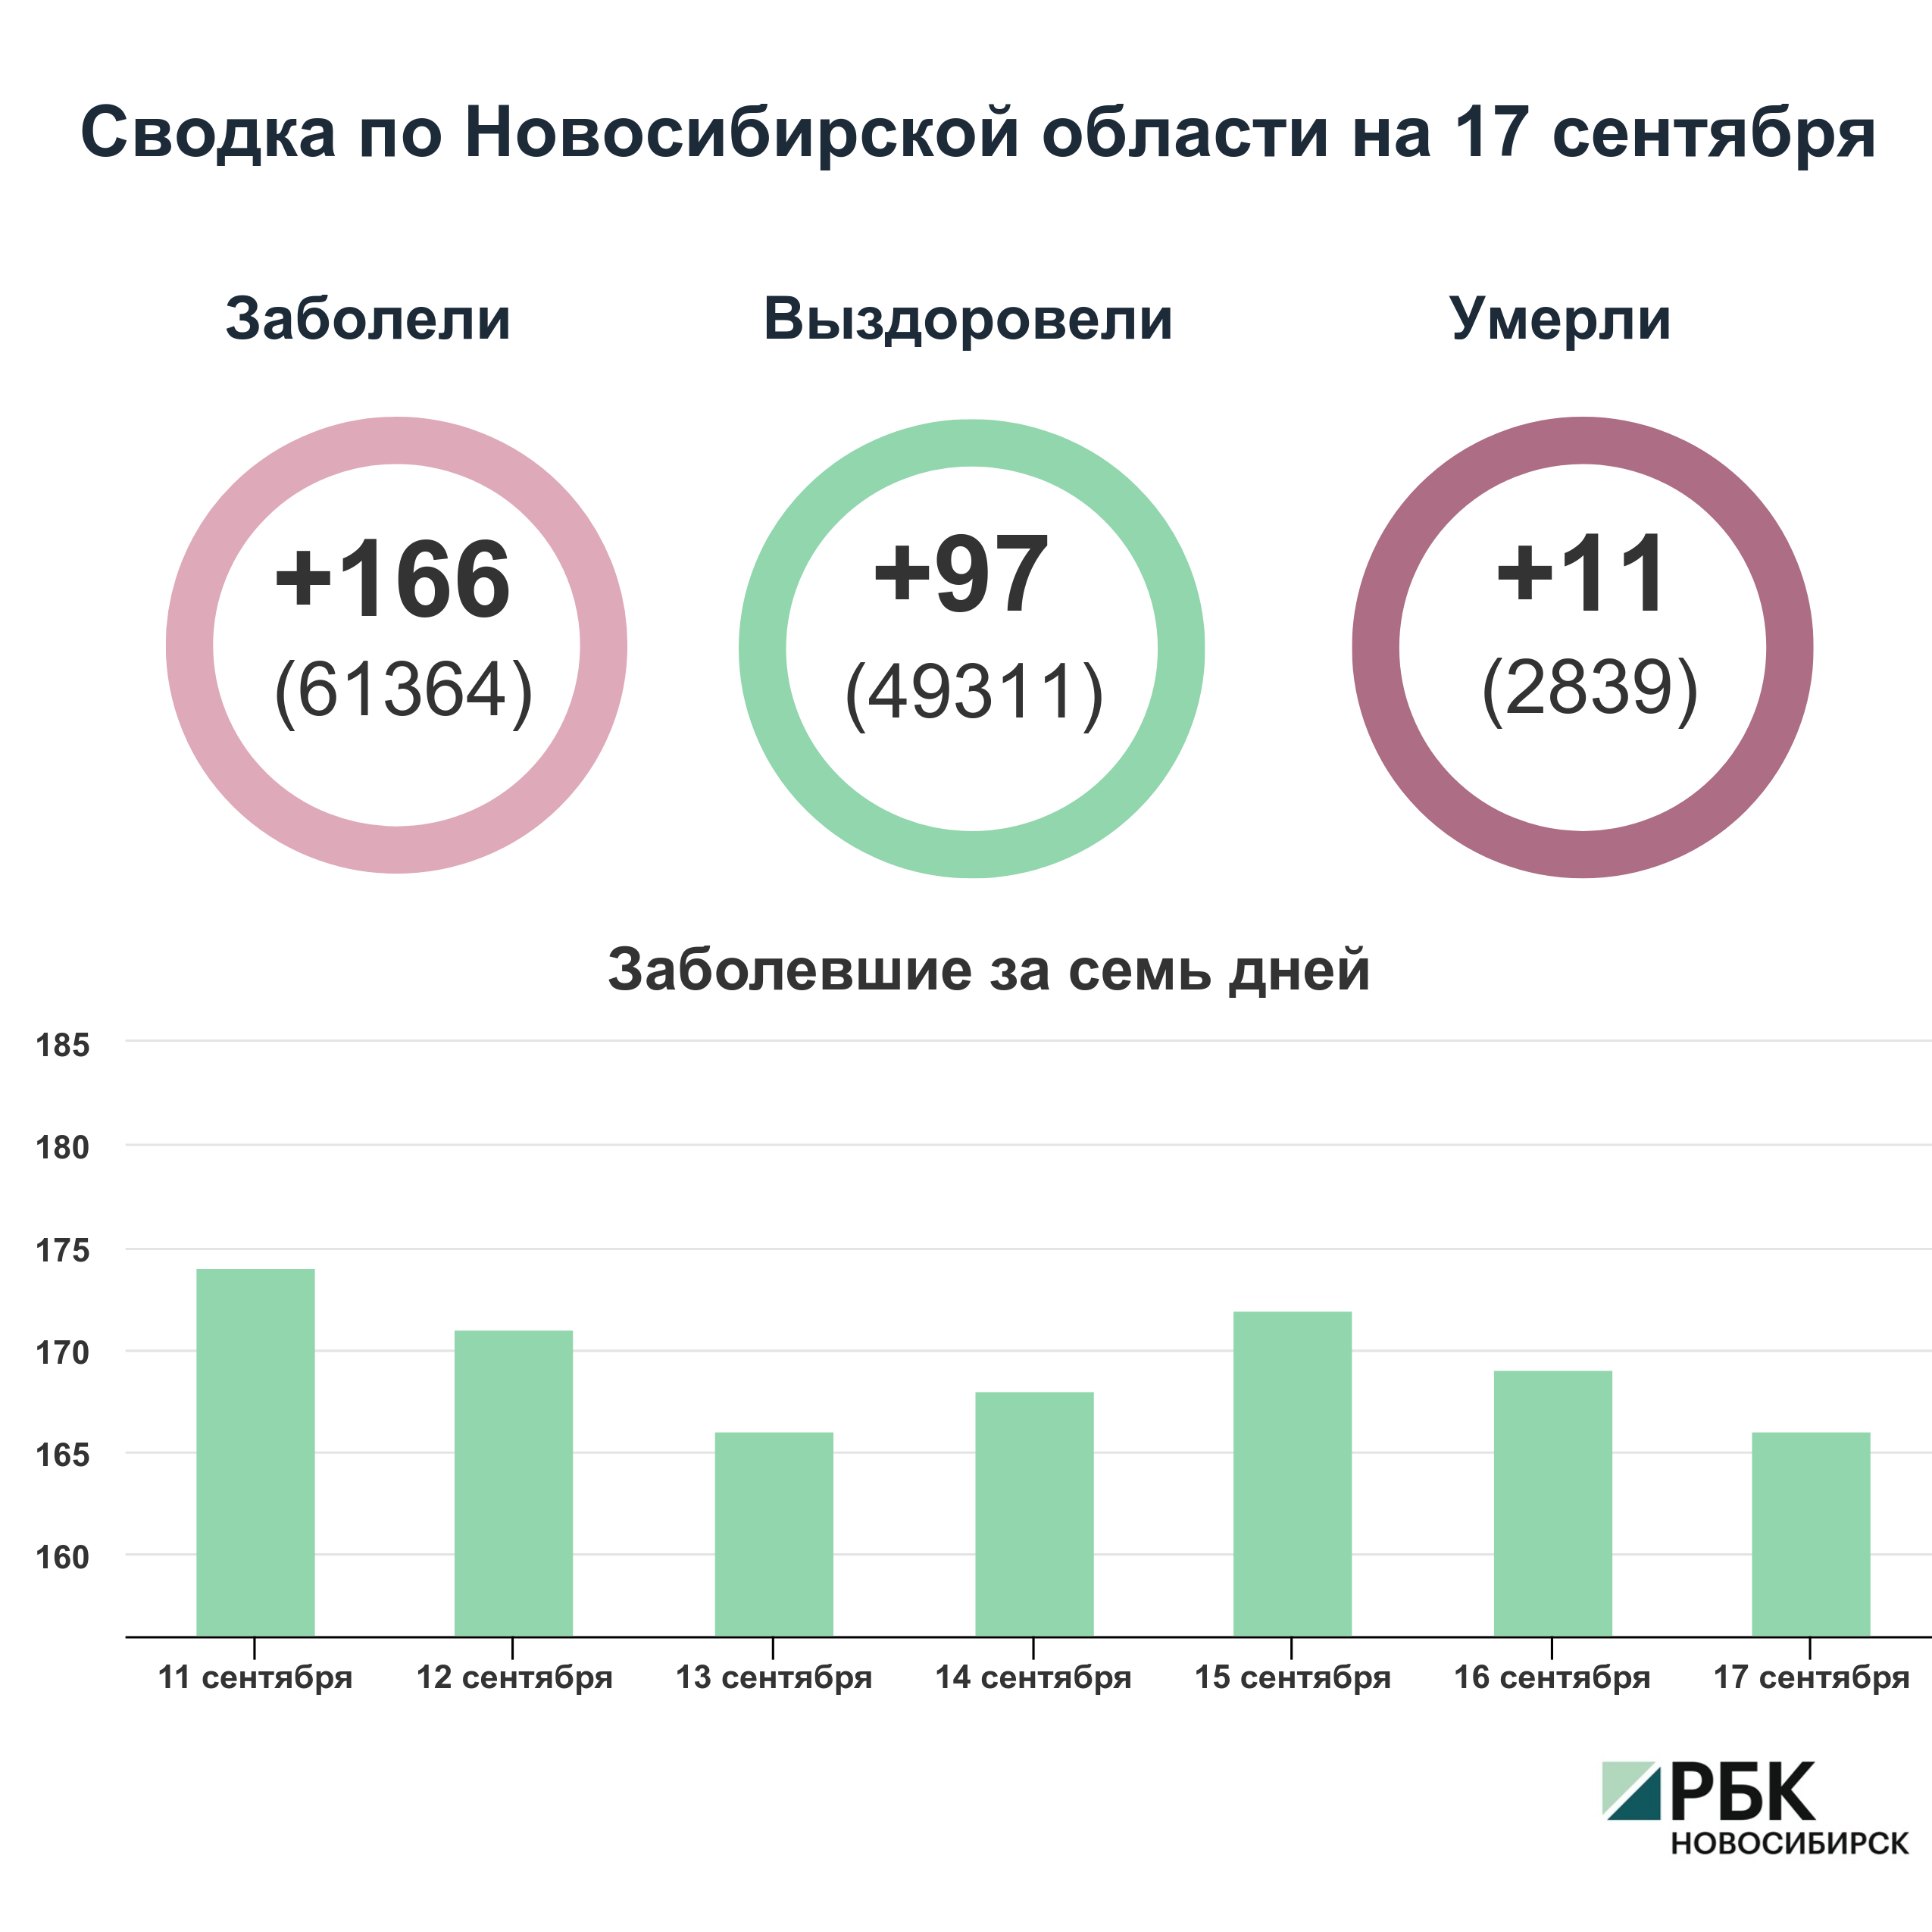 Коронавирус в Новосибирске: сводка на 17 сентября